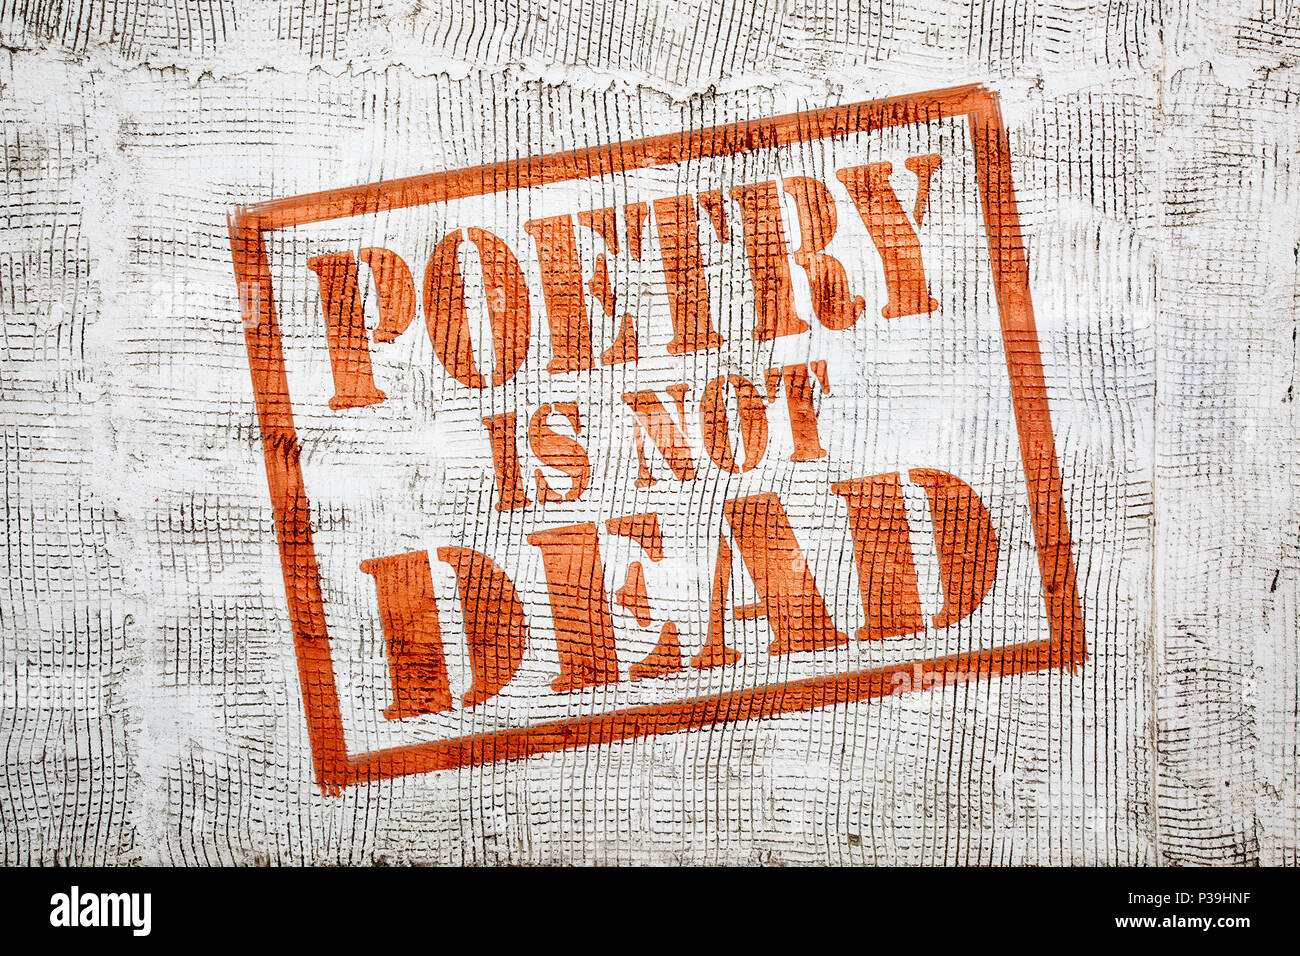 La poesía no está muerto - graffiti en firmar con la flecha de la pared de estuco. Foto de stock